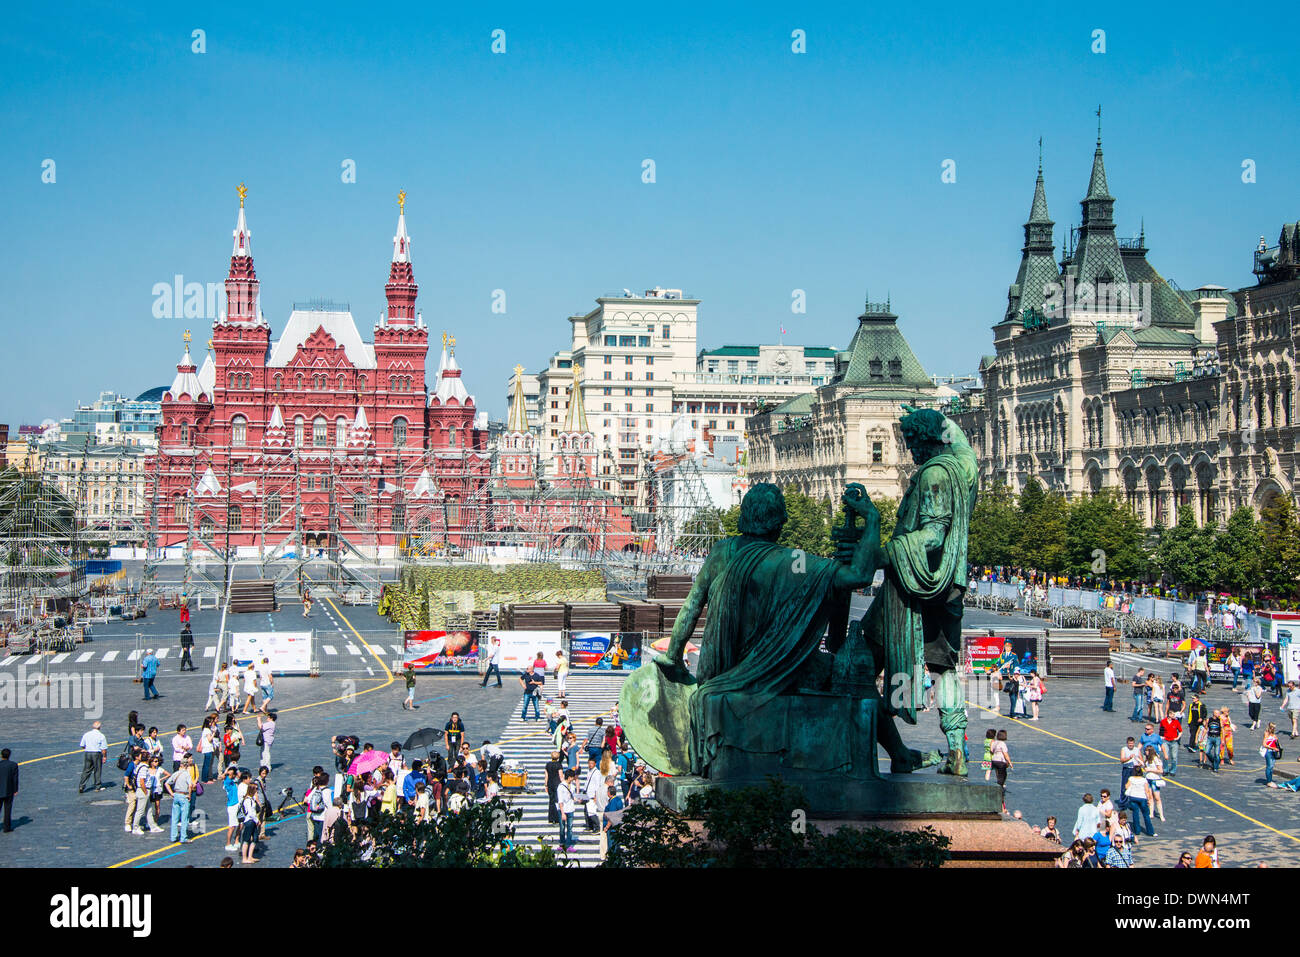 Vue sur la Place Rouge, l'UNESCO World Heritage Site, Moscou, Russie, Europe Banque D'Images